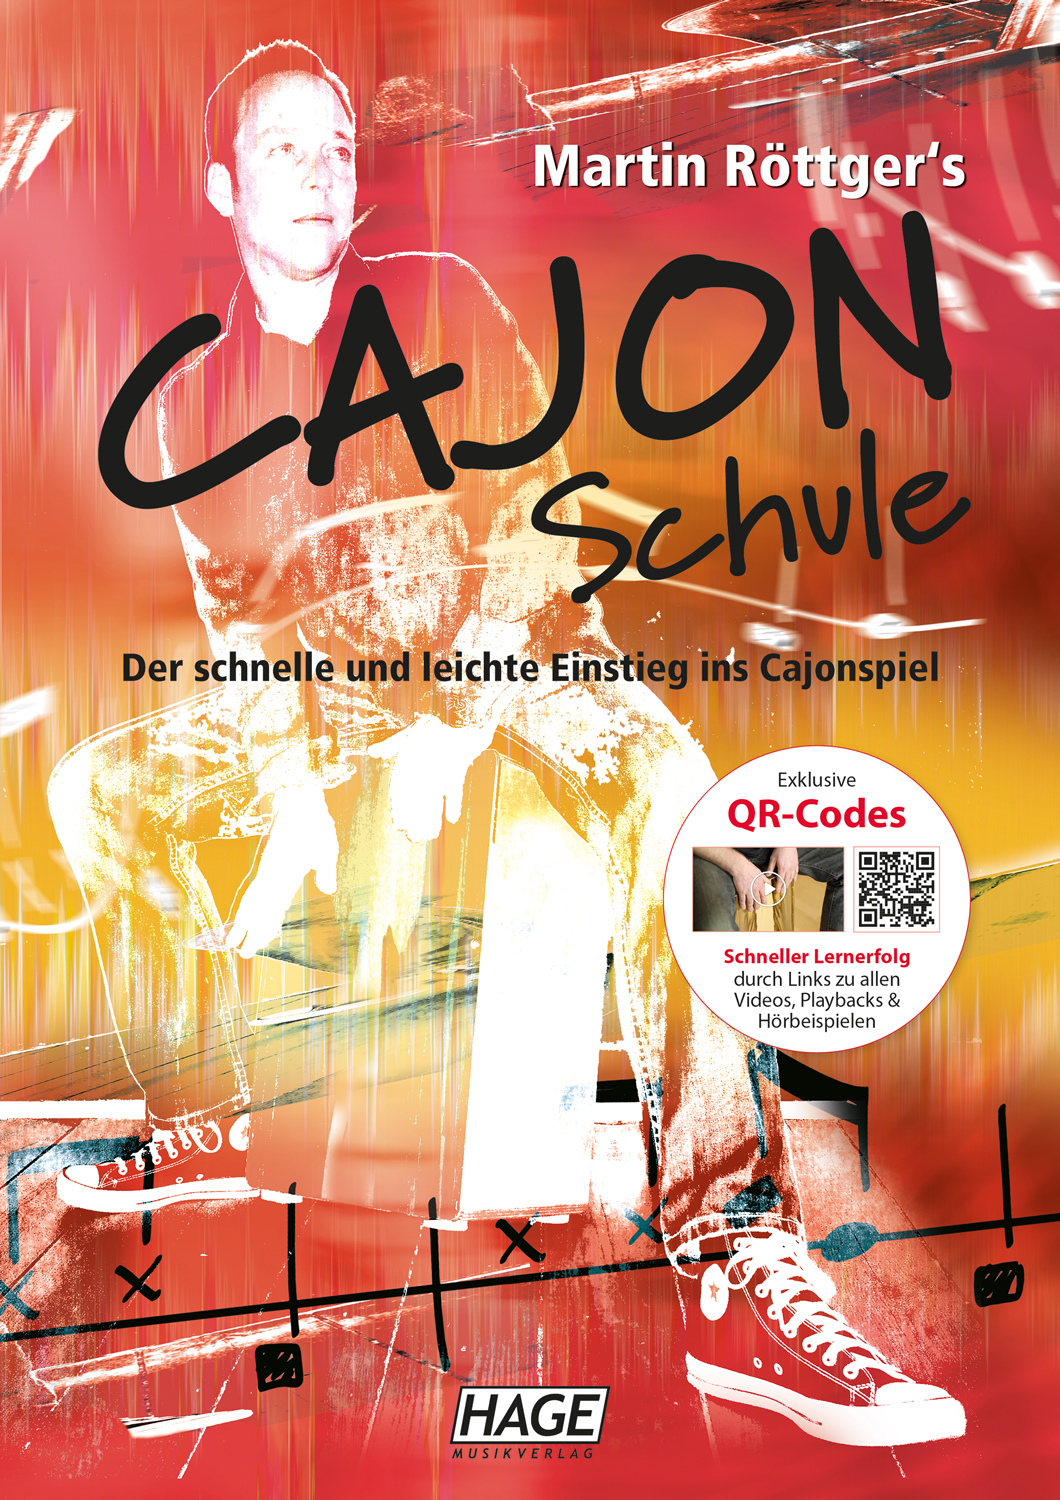 Cajon School